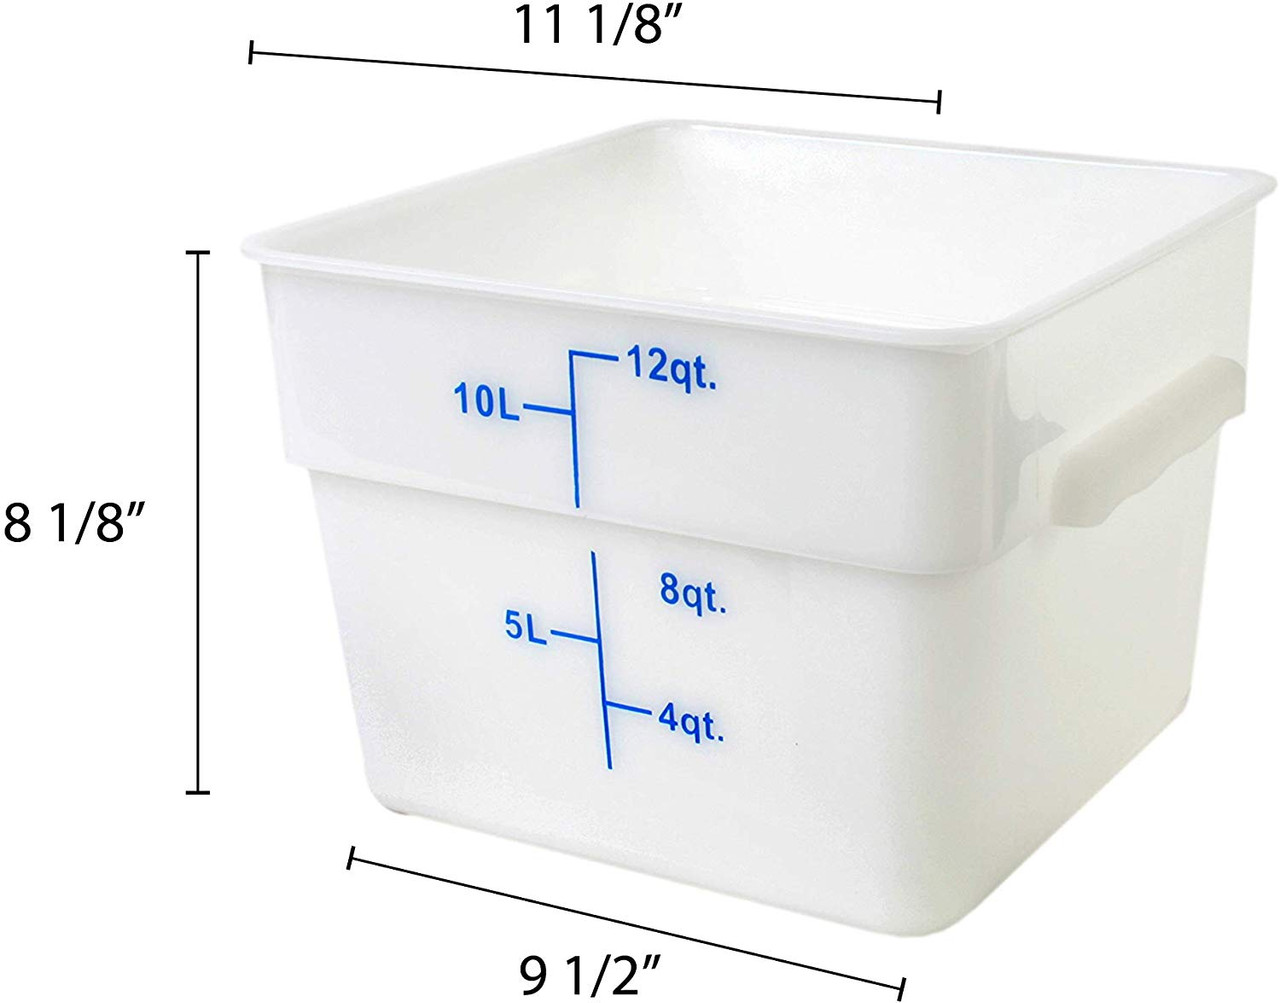 2-Quart Square White Food Storage Container